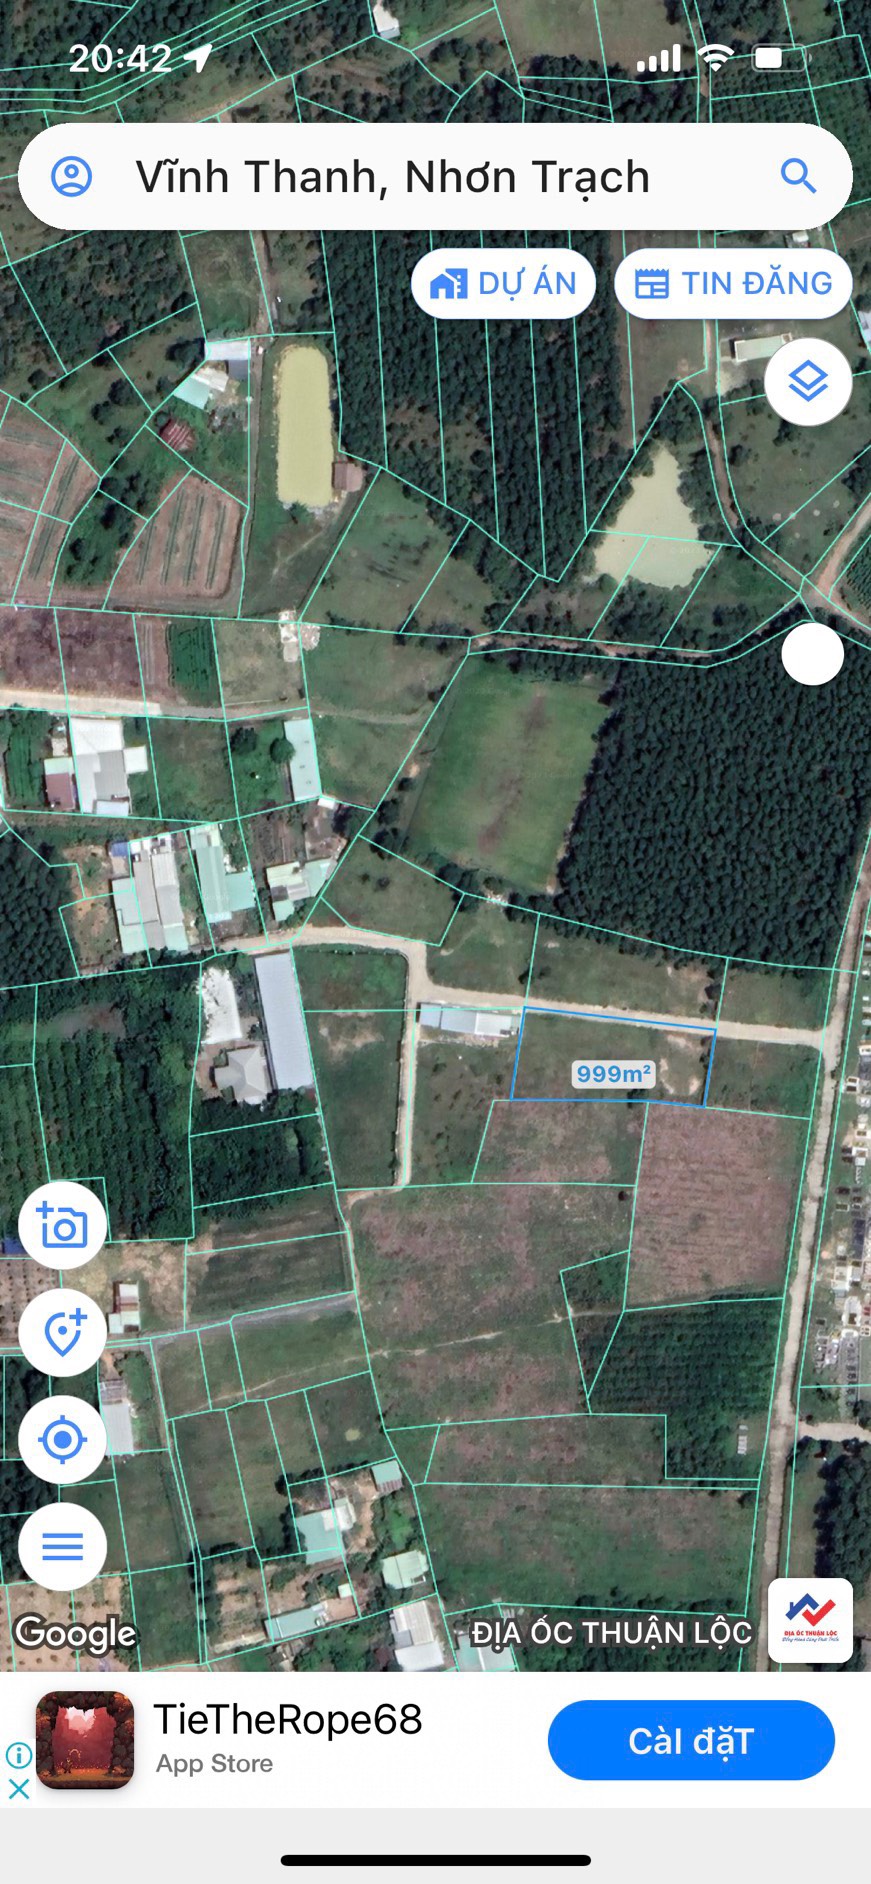 Bán lô đất 1002m2 Xã Vĩnh Thanh, Huyện Nhơn, Trạch Tỉnh Đồng Nai - Ảnh 2